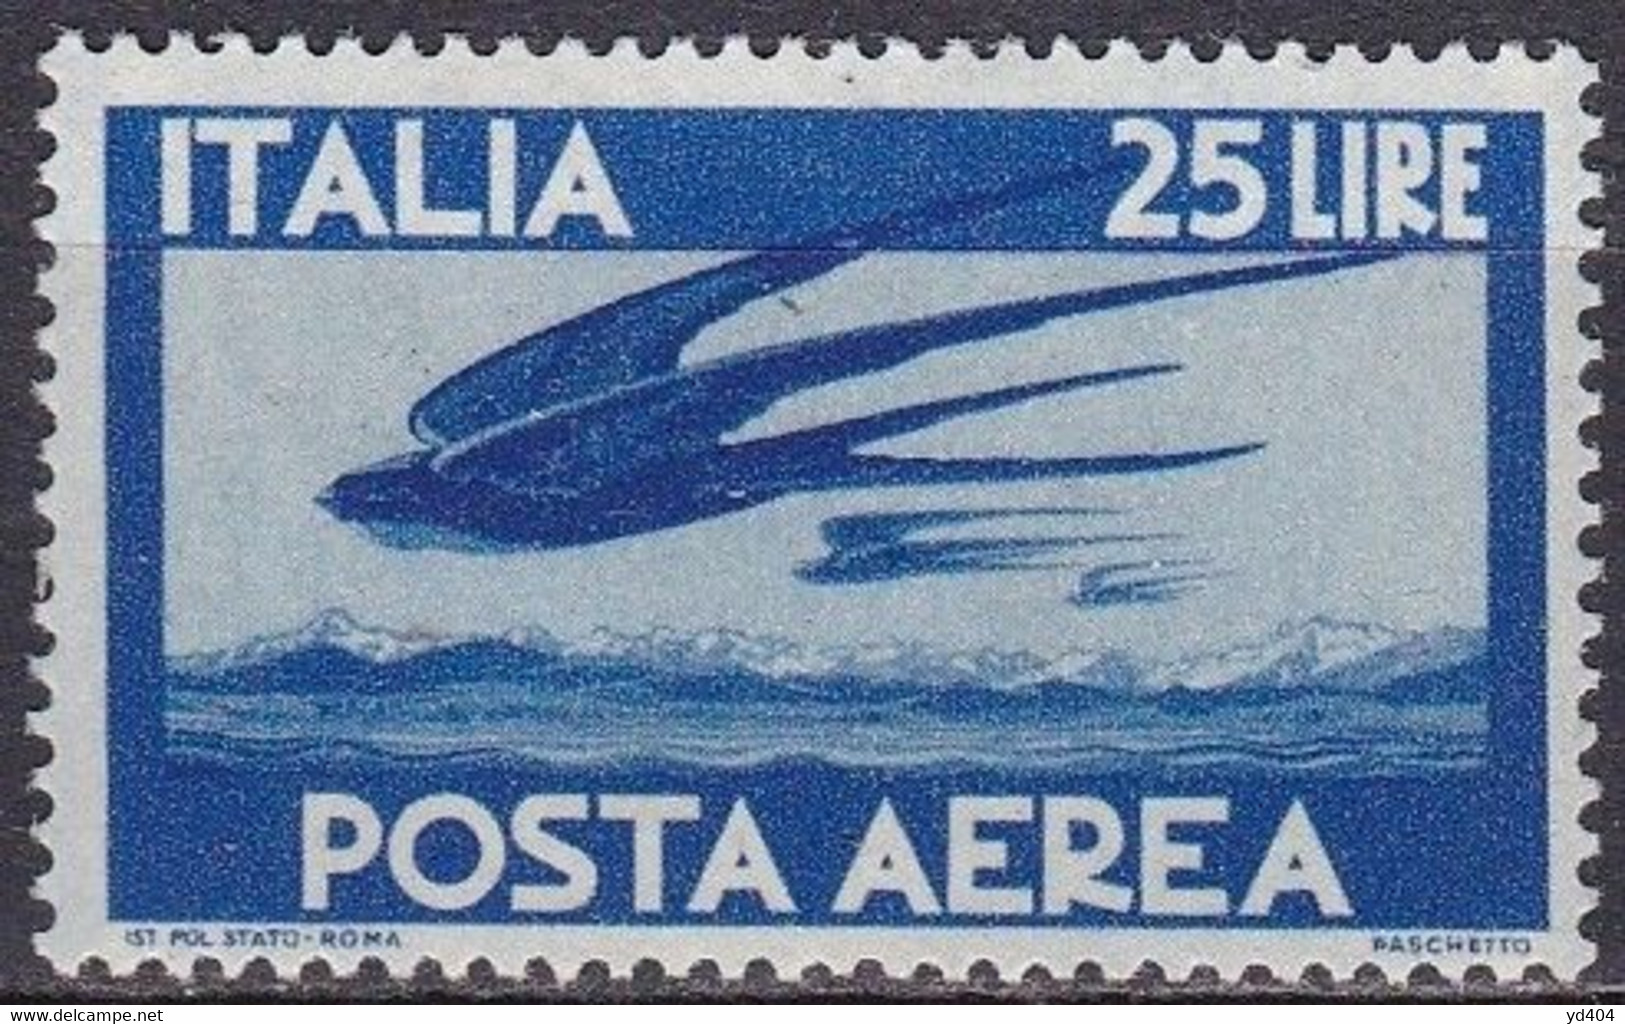 IT124 – ITALY - ITALIE – AIRMAIL – 1947 – CLAPS HANDS & PLANE – Y&T # 118 MVLH 15 € - Poste Aérienne